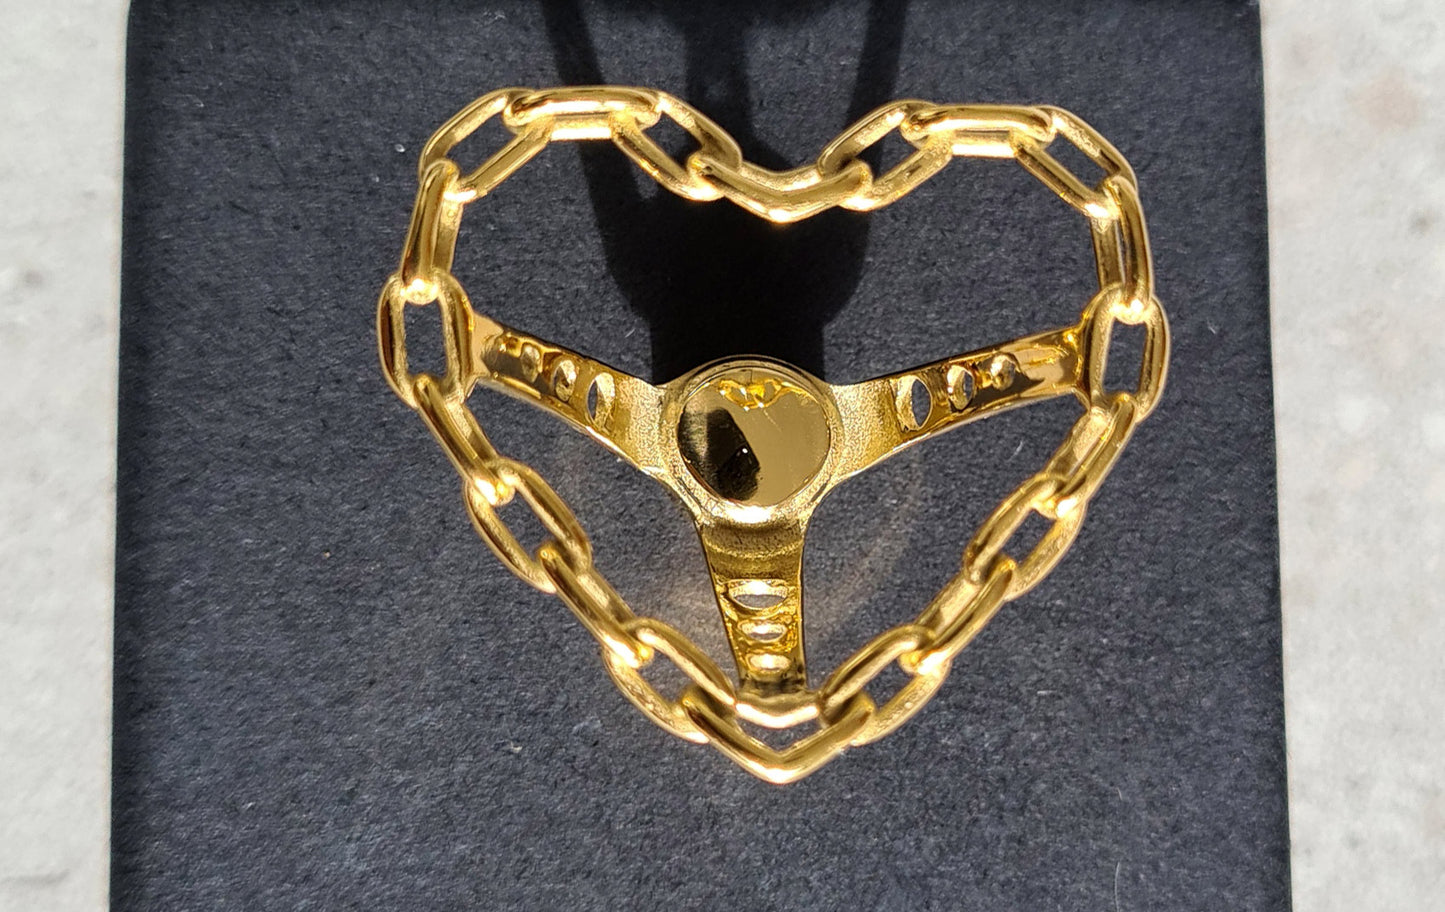 Heart shaped Steel Chain Steering Wheel